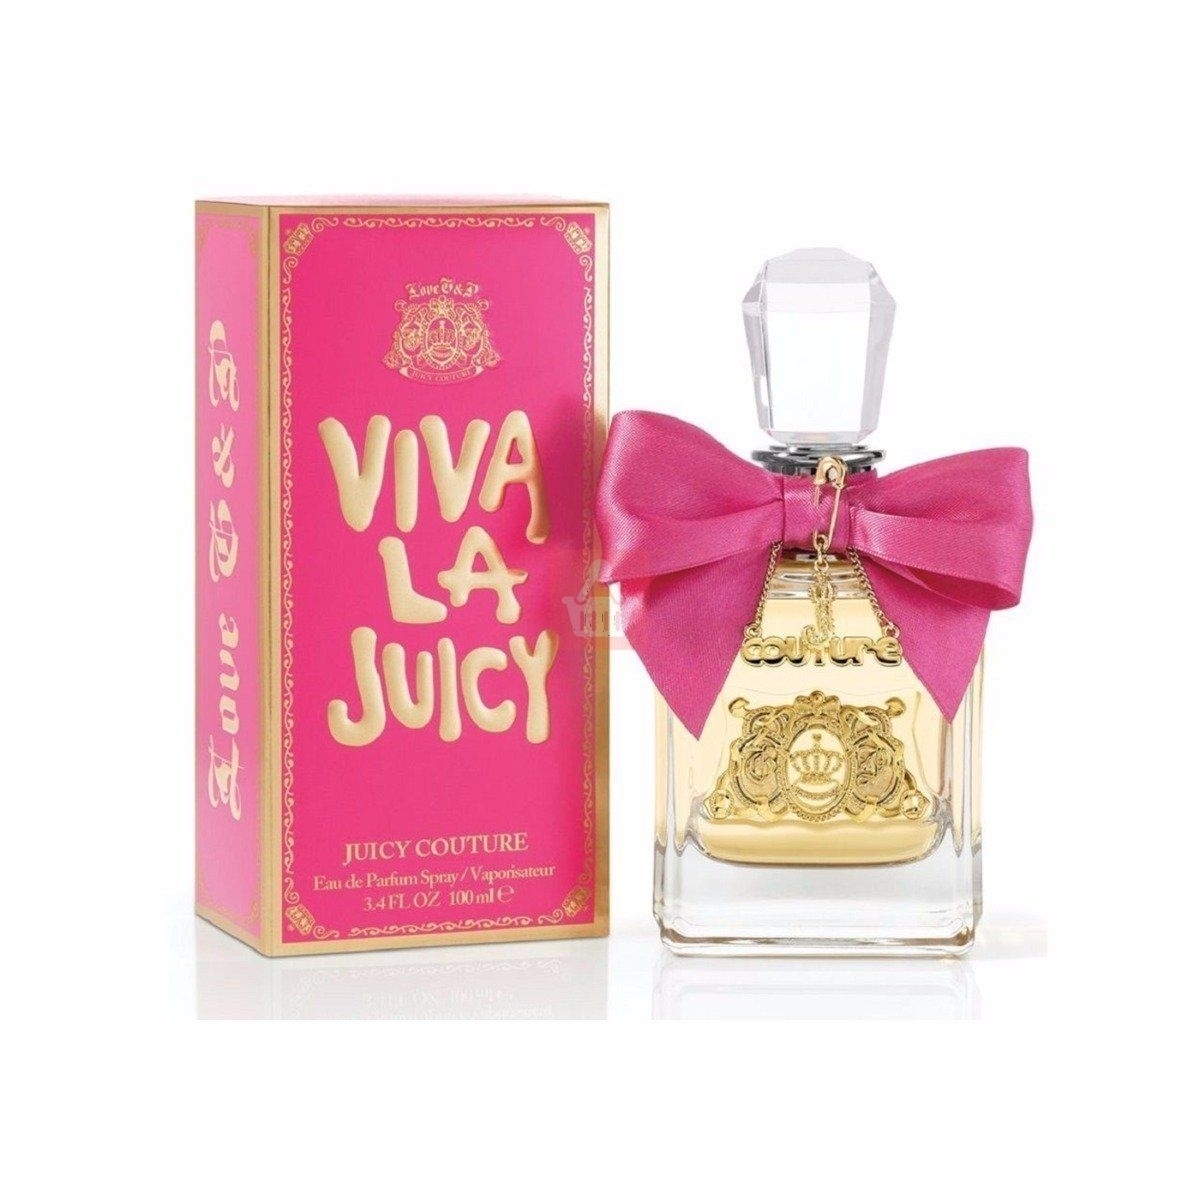 Juicy Couture Viva La Juicy EDP Perfume For Women 3.4 Oz